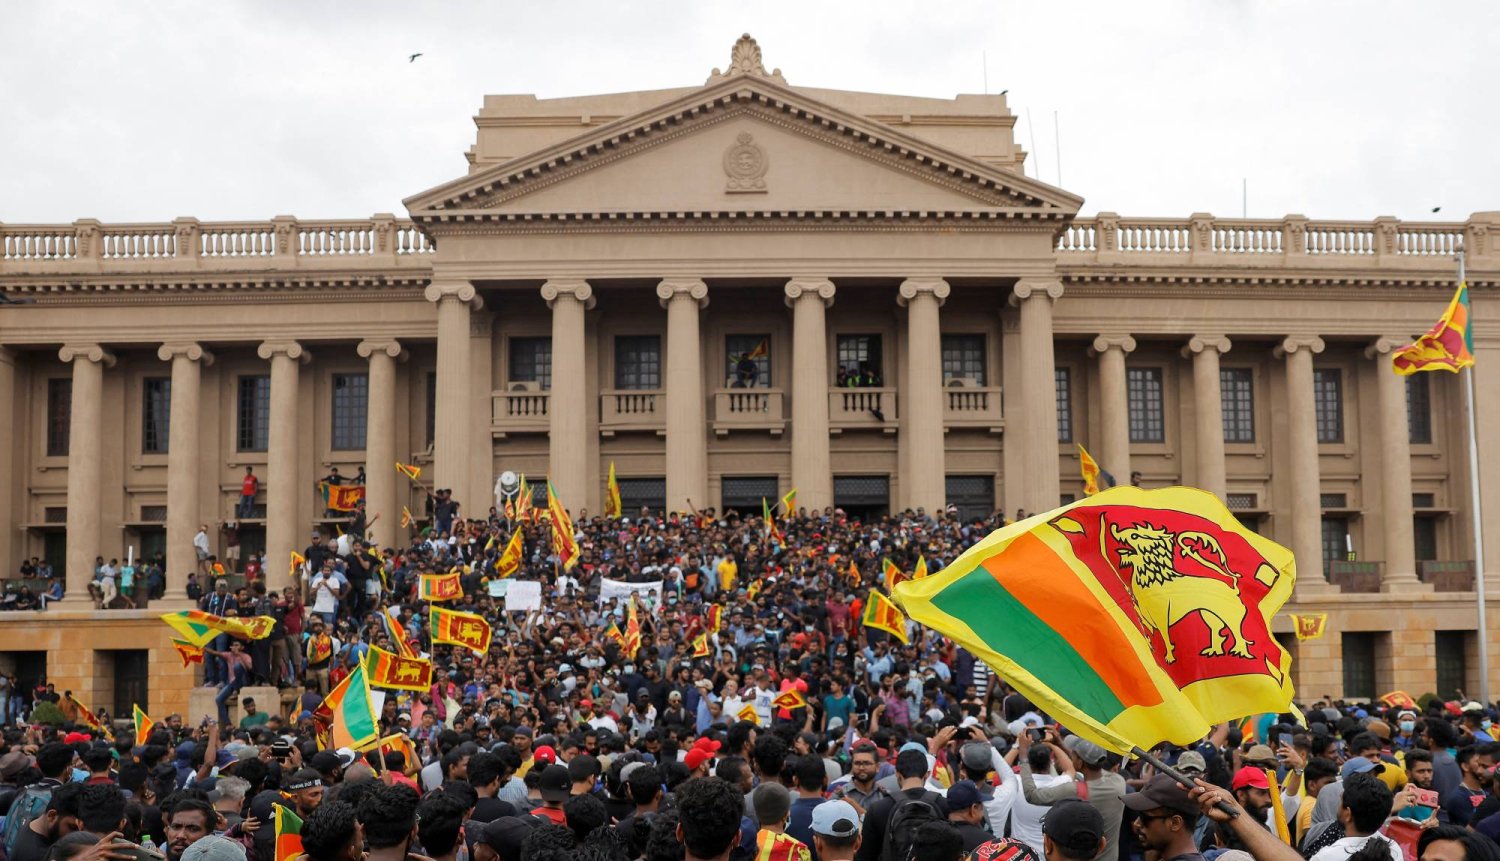 متظاهرون يحتجون داخل مقر الأمانة الرئاسية بعد فرار الرئيس جوتابايا راجاباكسا وسط الأزمة الاقتصادية في البلاد، في كولومبو (رويترز)